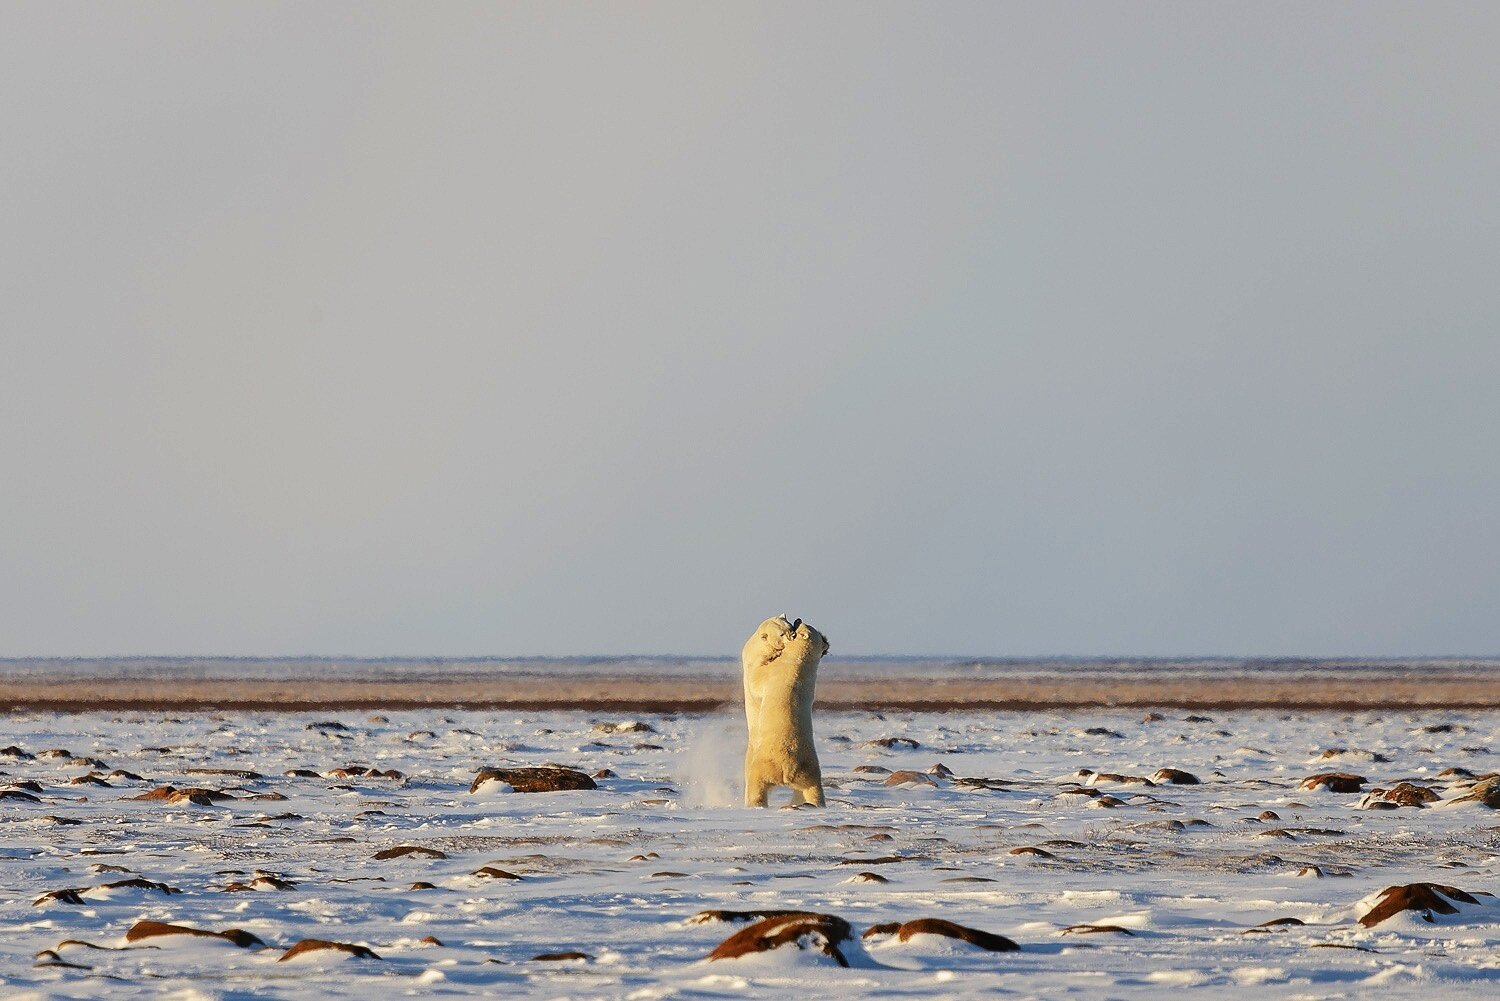 Male Polar Bears Sparring on the Tundra 2